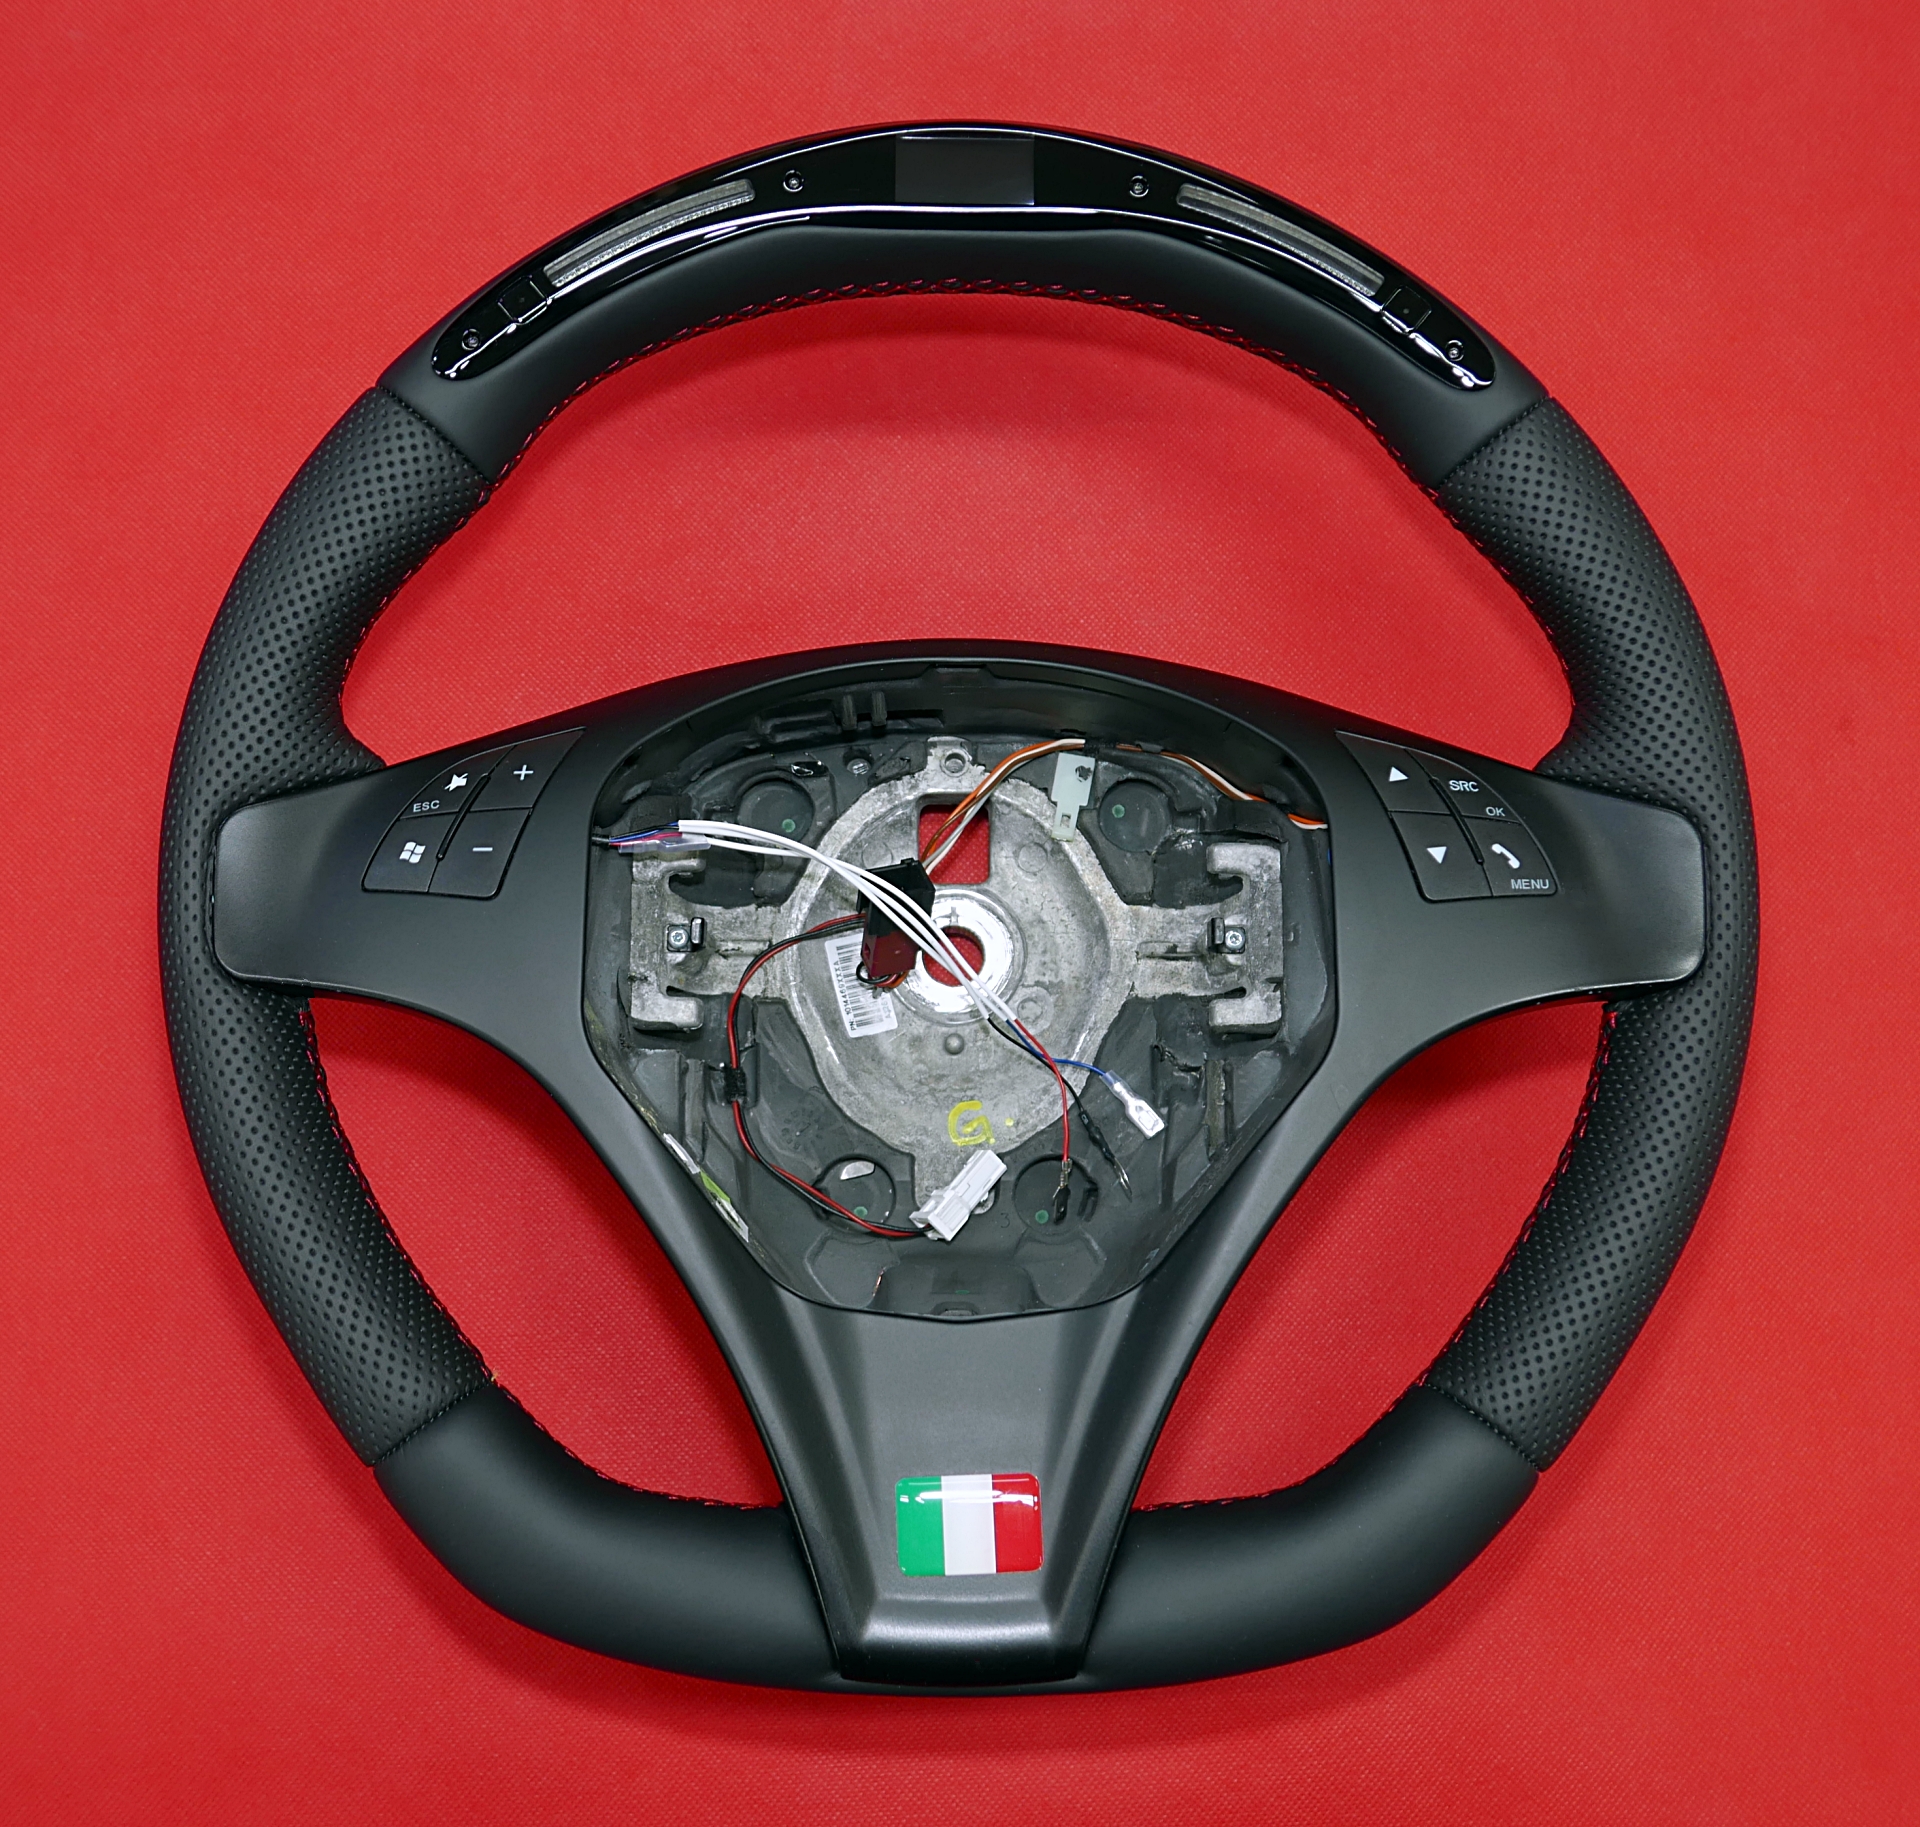 Kierownica Alfa Romeo z wyświetlaczem LED